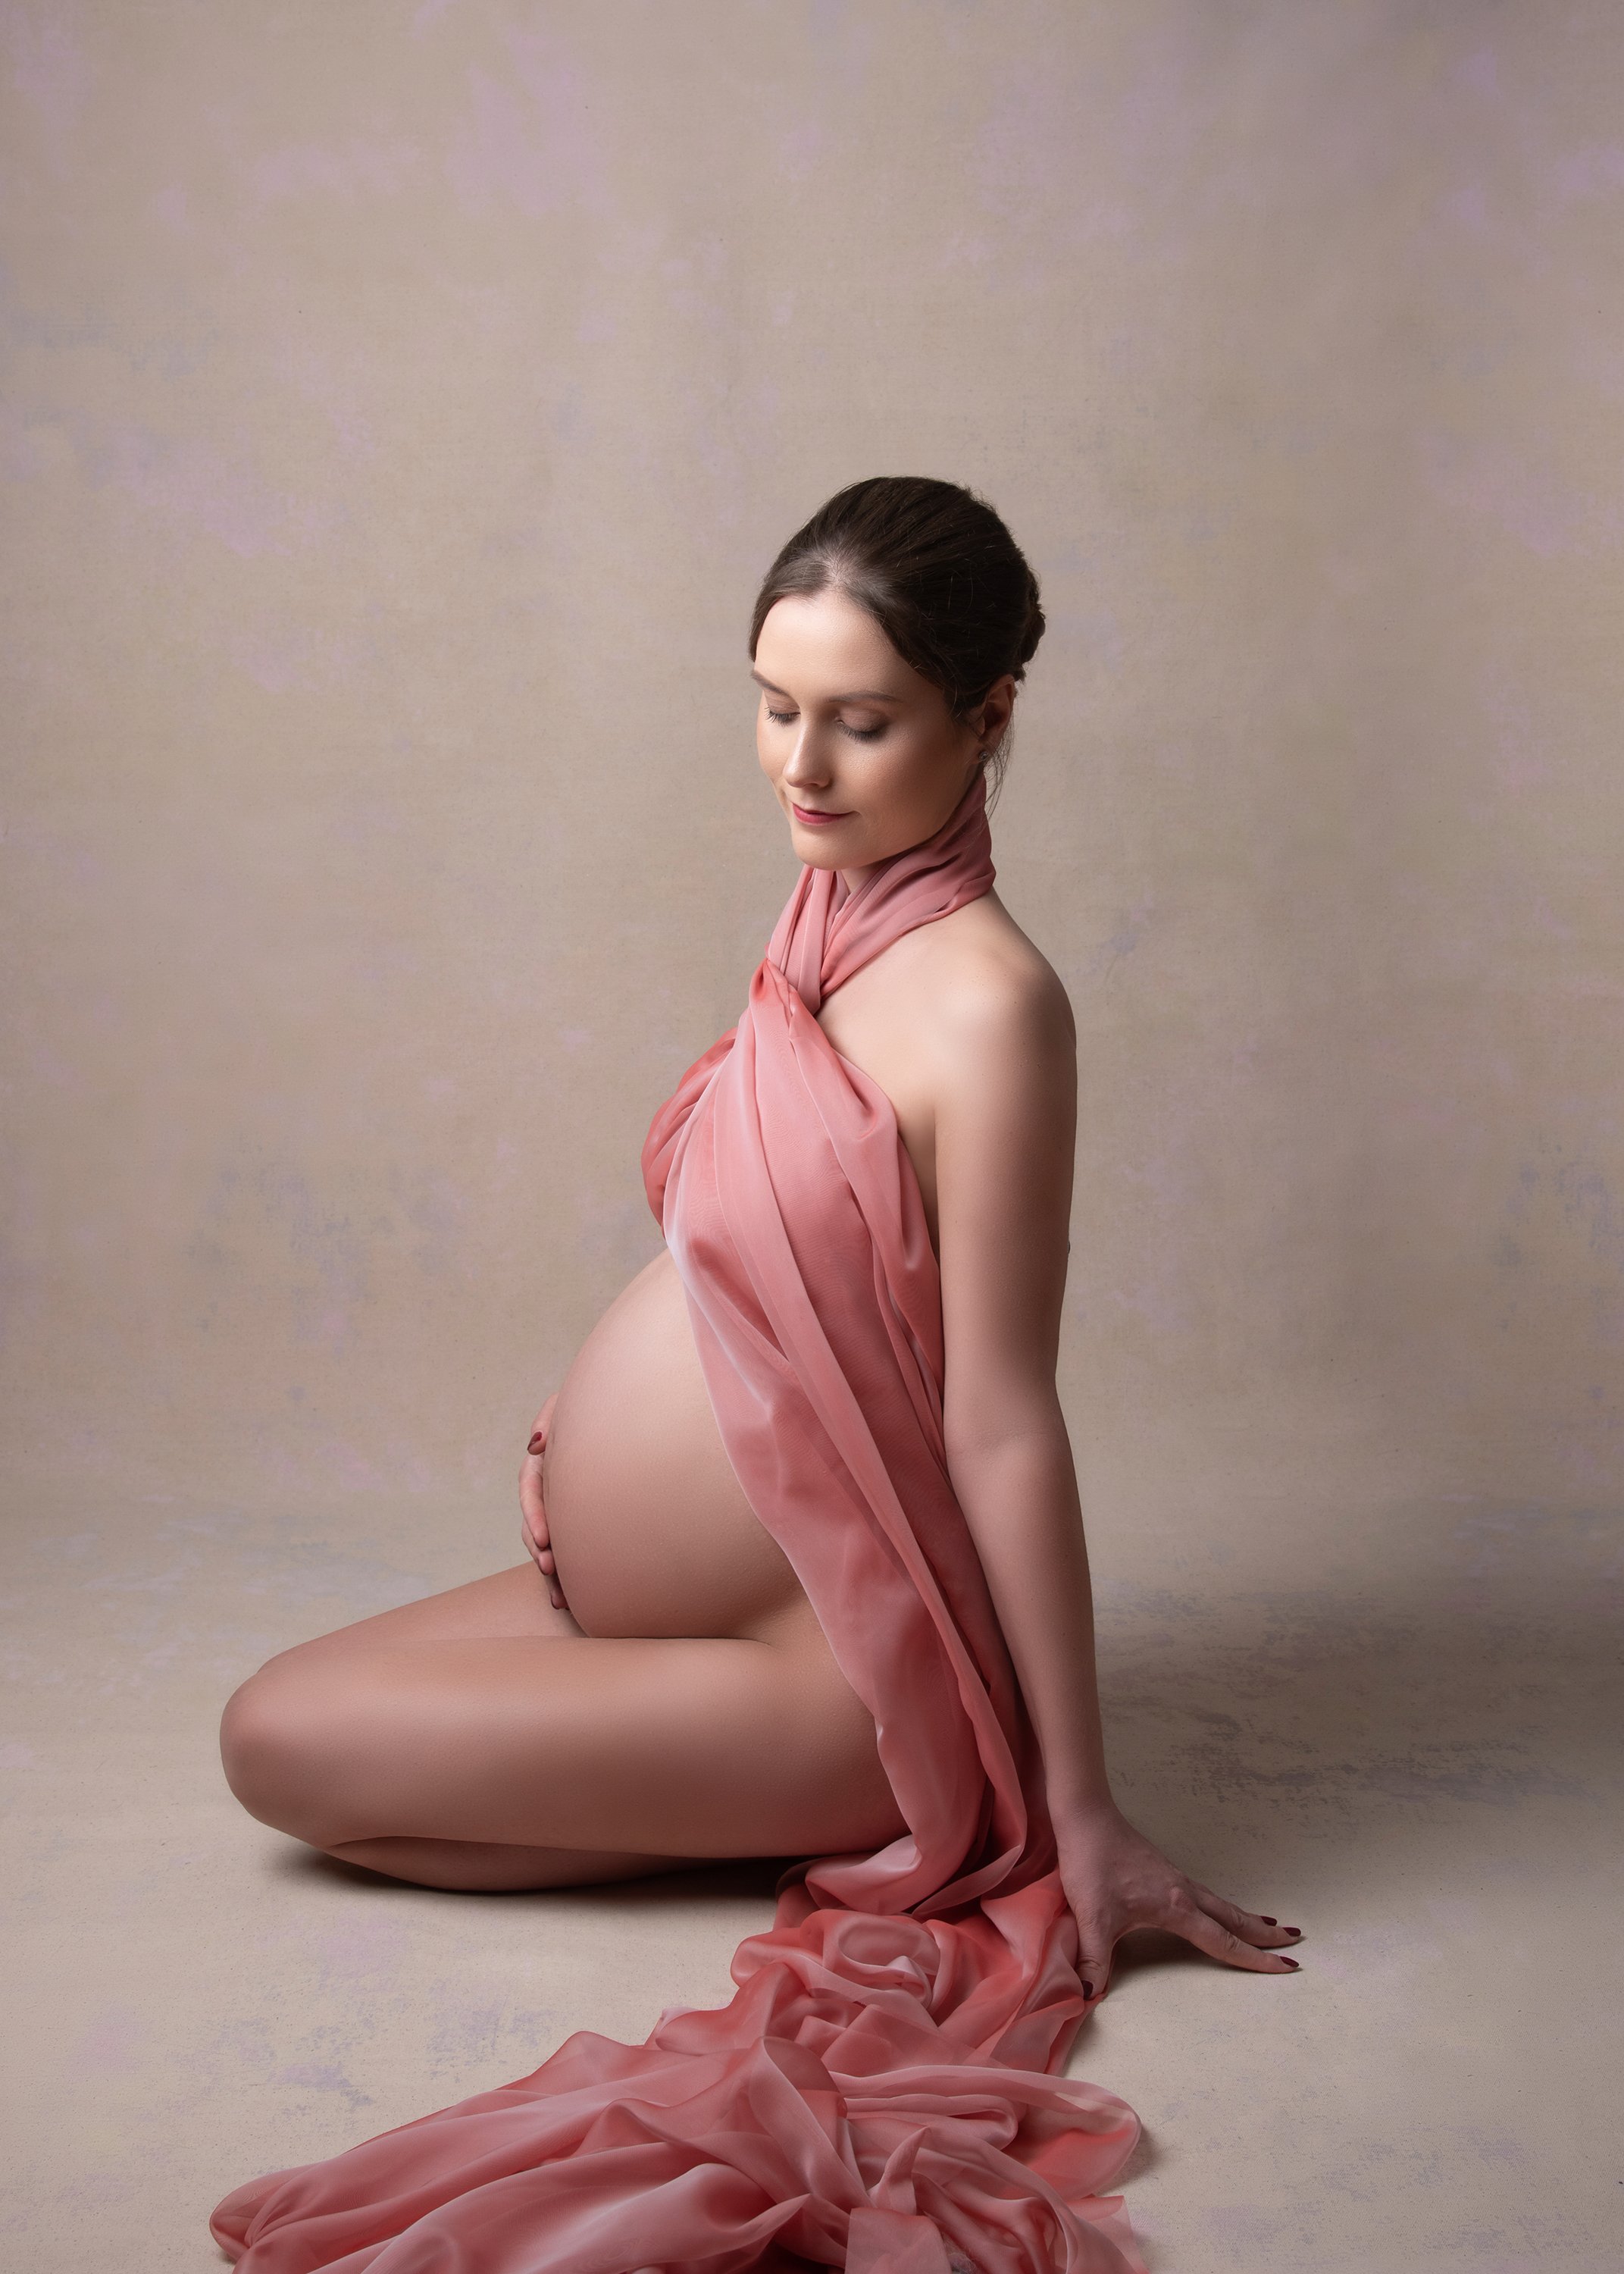 Pregnancy-photoshoot.jpg